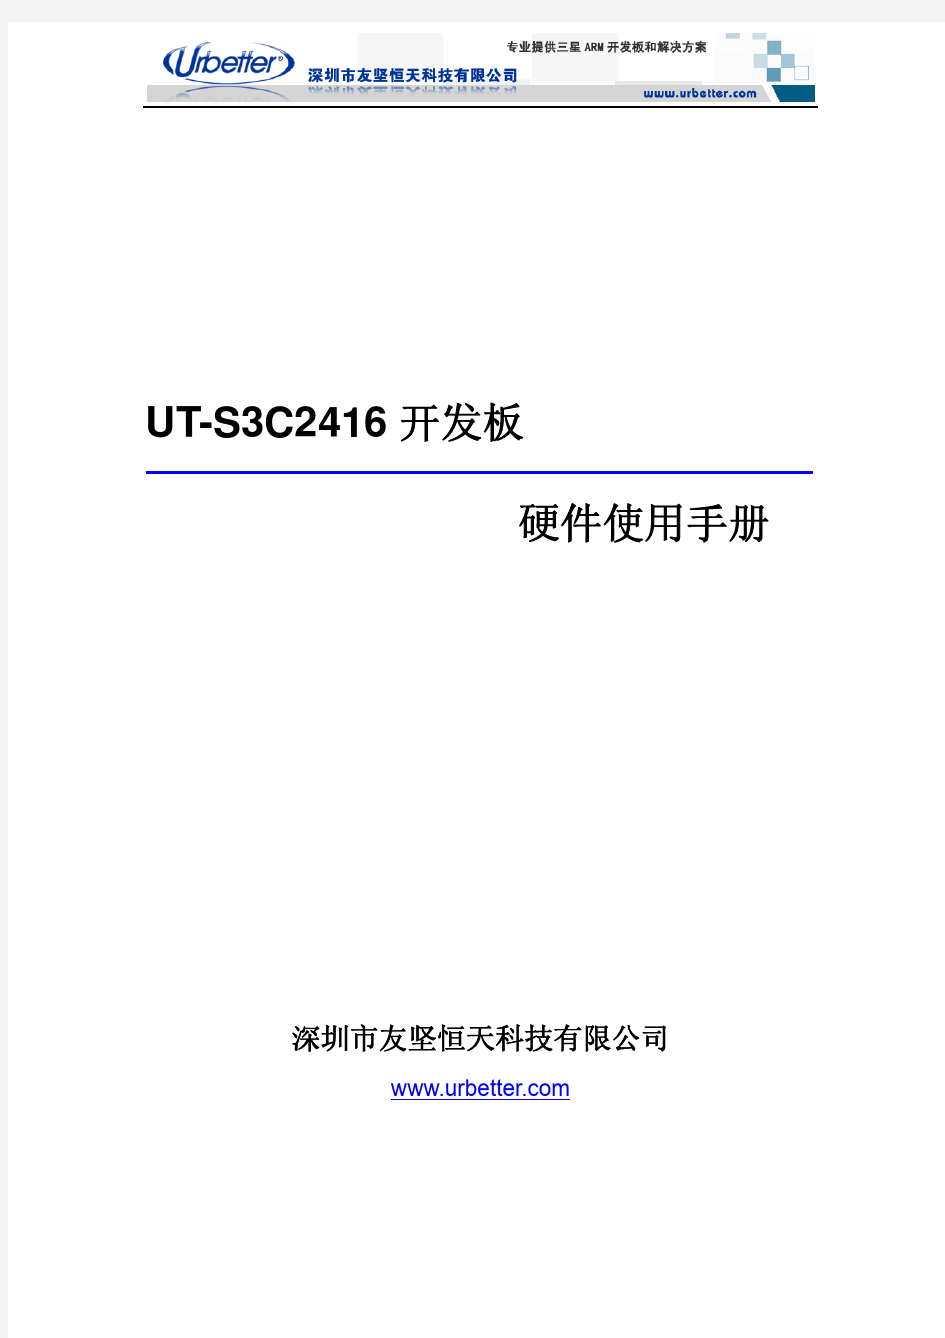 UT-S3C2416开发板硬件手册